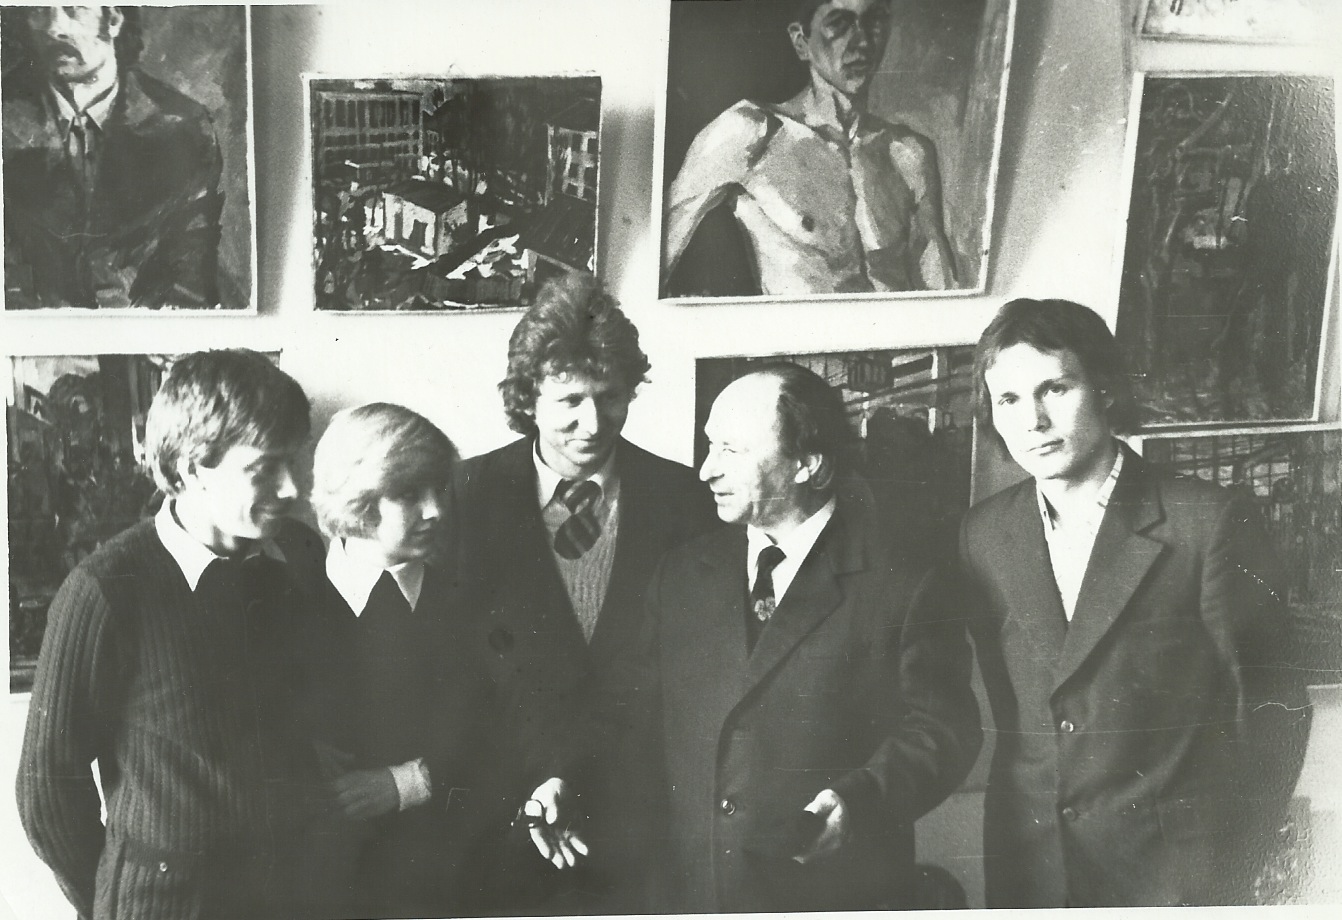   Chaim Livchitz with Students, Minsk, 1976  